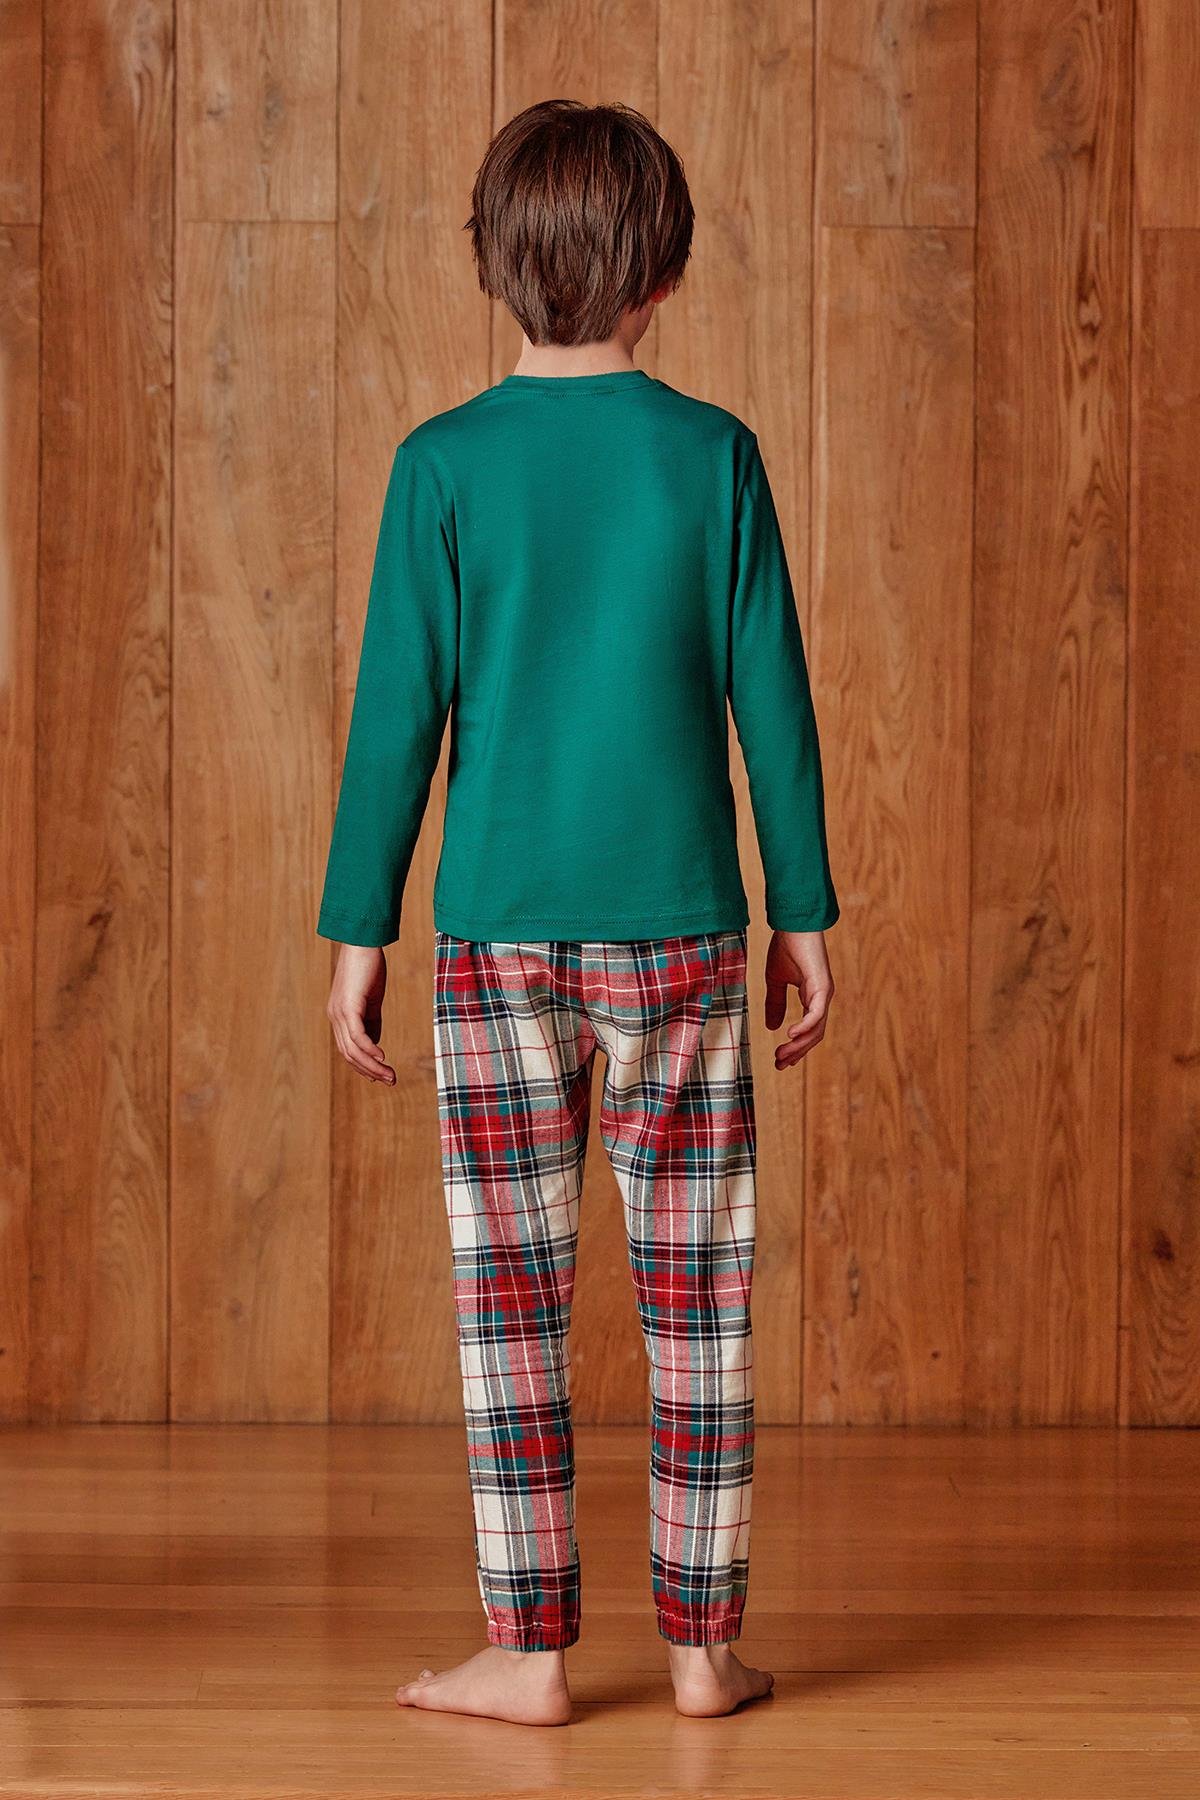 Erkek çocuk yılbaşı temalı pijama takımı